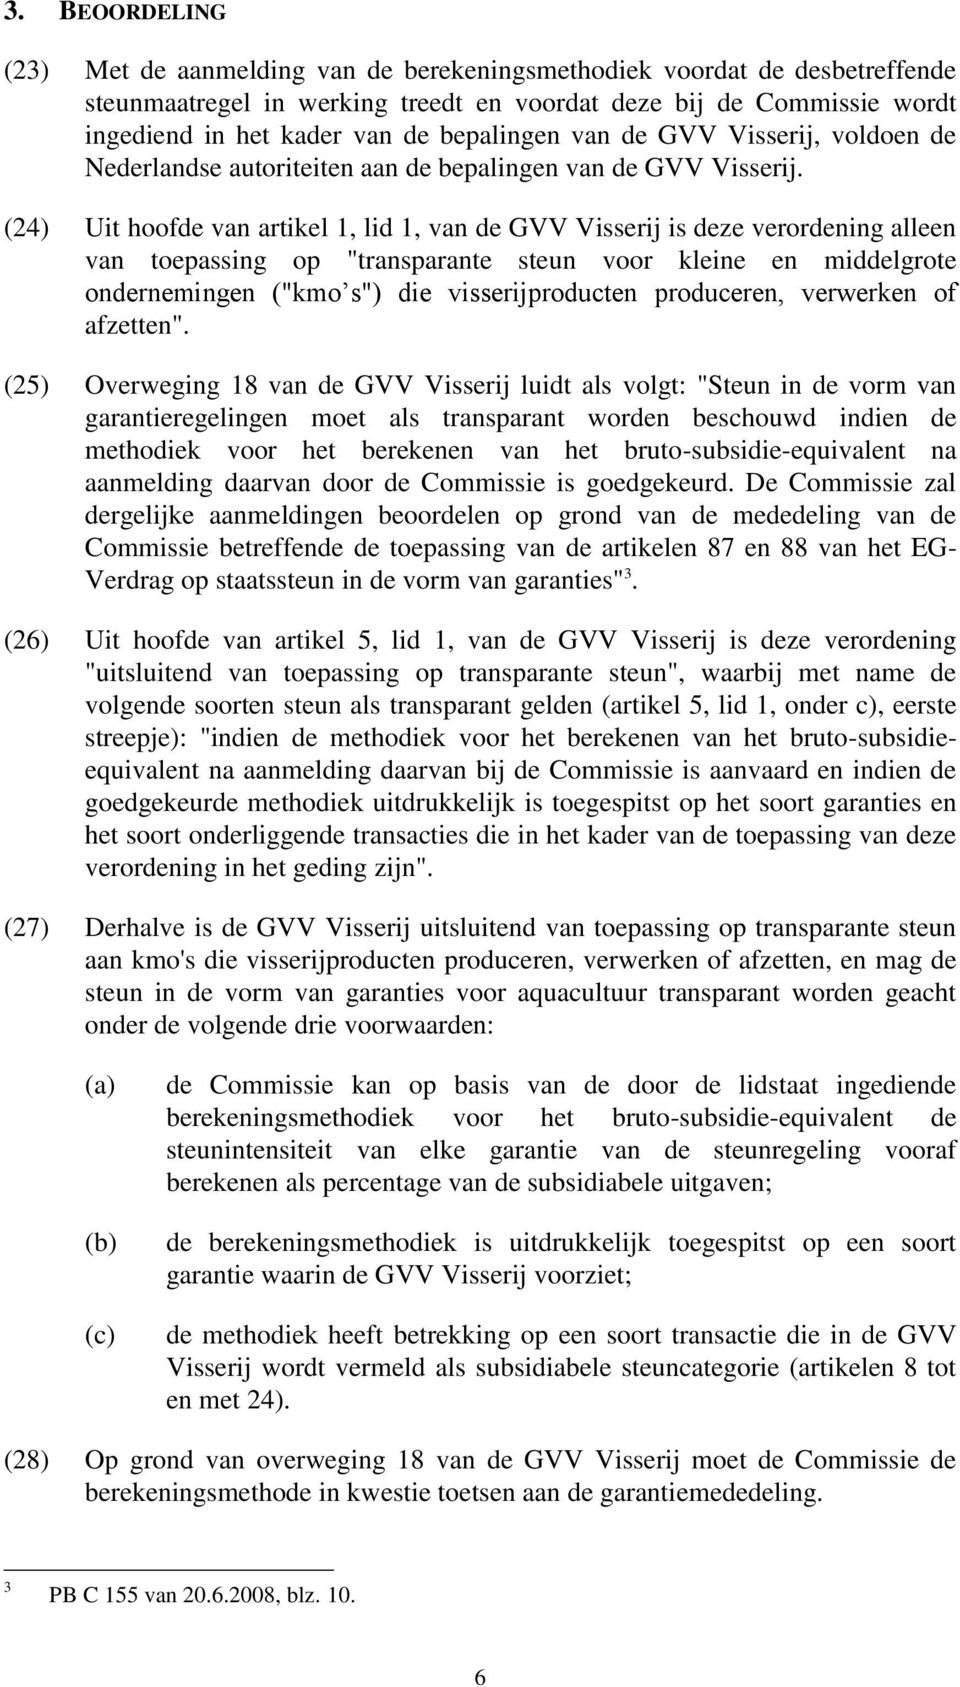 (24) Uit hoofde van artikel 1, lid 1, van de GVV Visserij is deze verordening alleen van toepassing op "transparante steun voor kleine en middelgrote ondernemingen ("kmo s") die visserijproducten